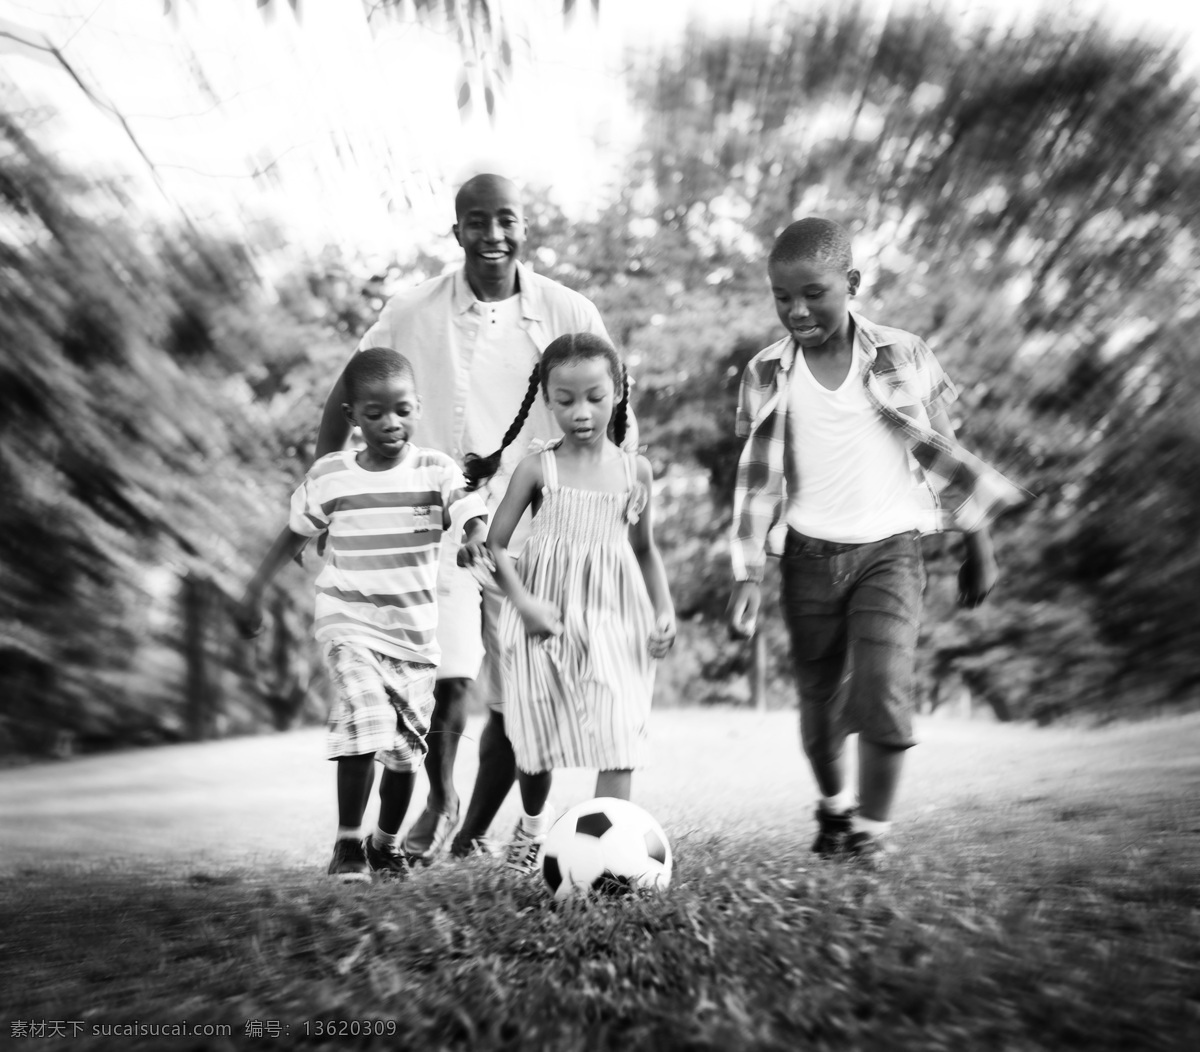 草地 上 踢 足球 一家人 小男孩 小女孩 爸爸 妈妈 大人小孩 幸福家庭 家人 亲情 生活 人物 家庭图片 人物图片